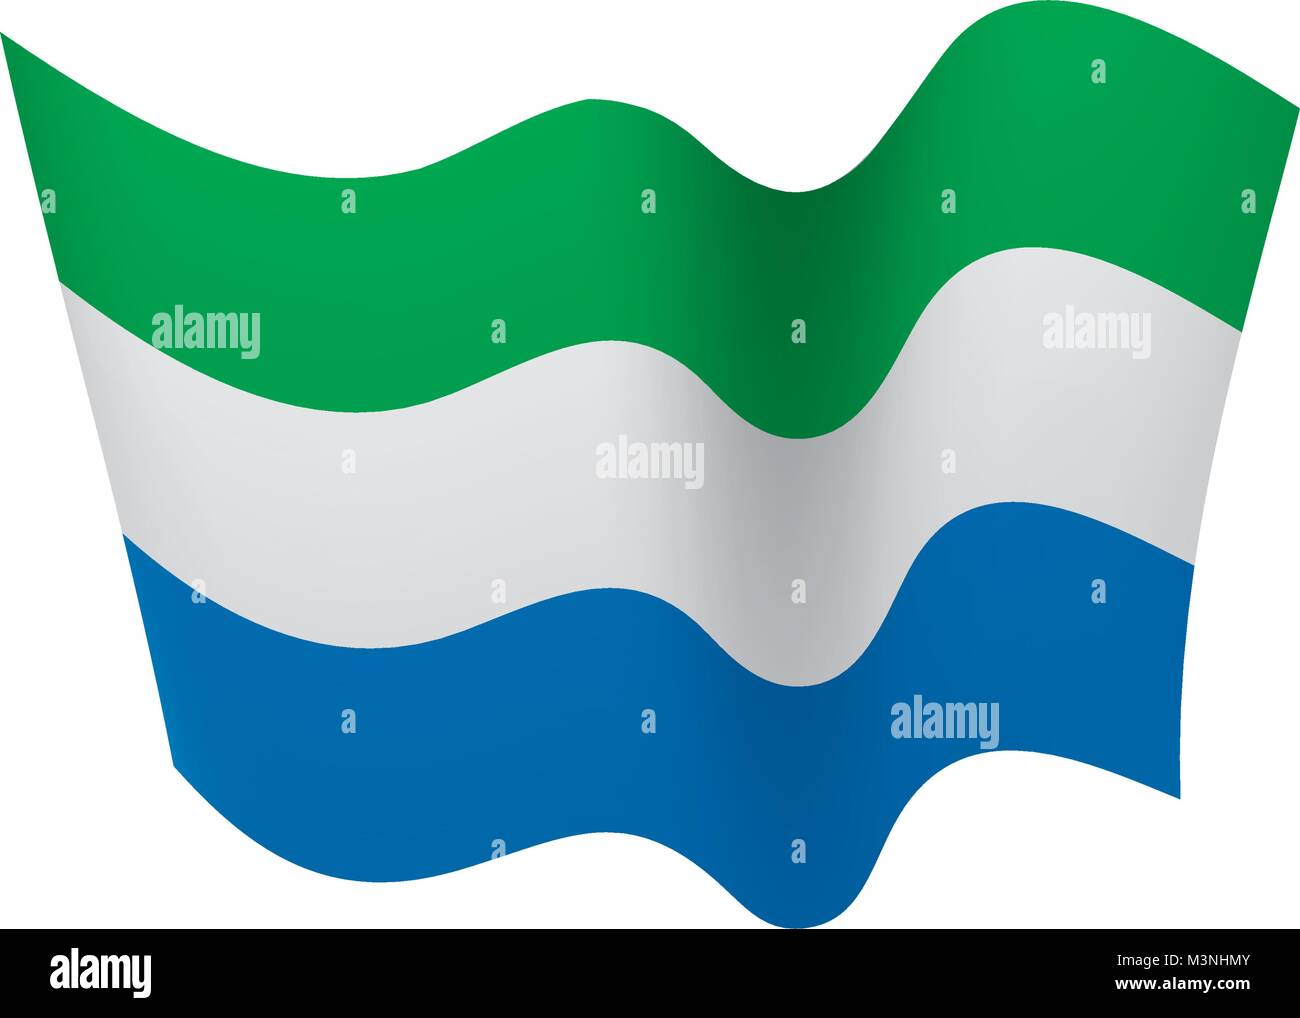 Sierra Leone flag, vector illustration Stock Vector